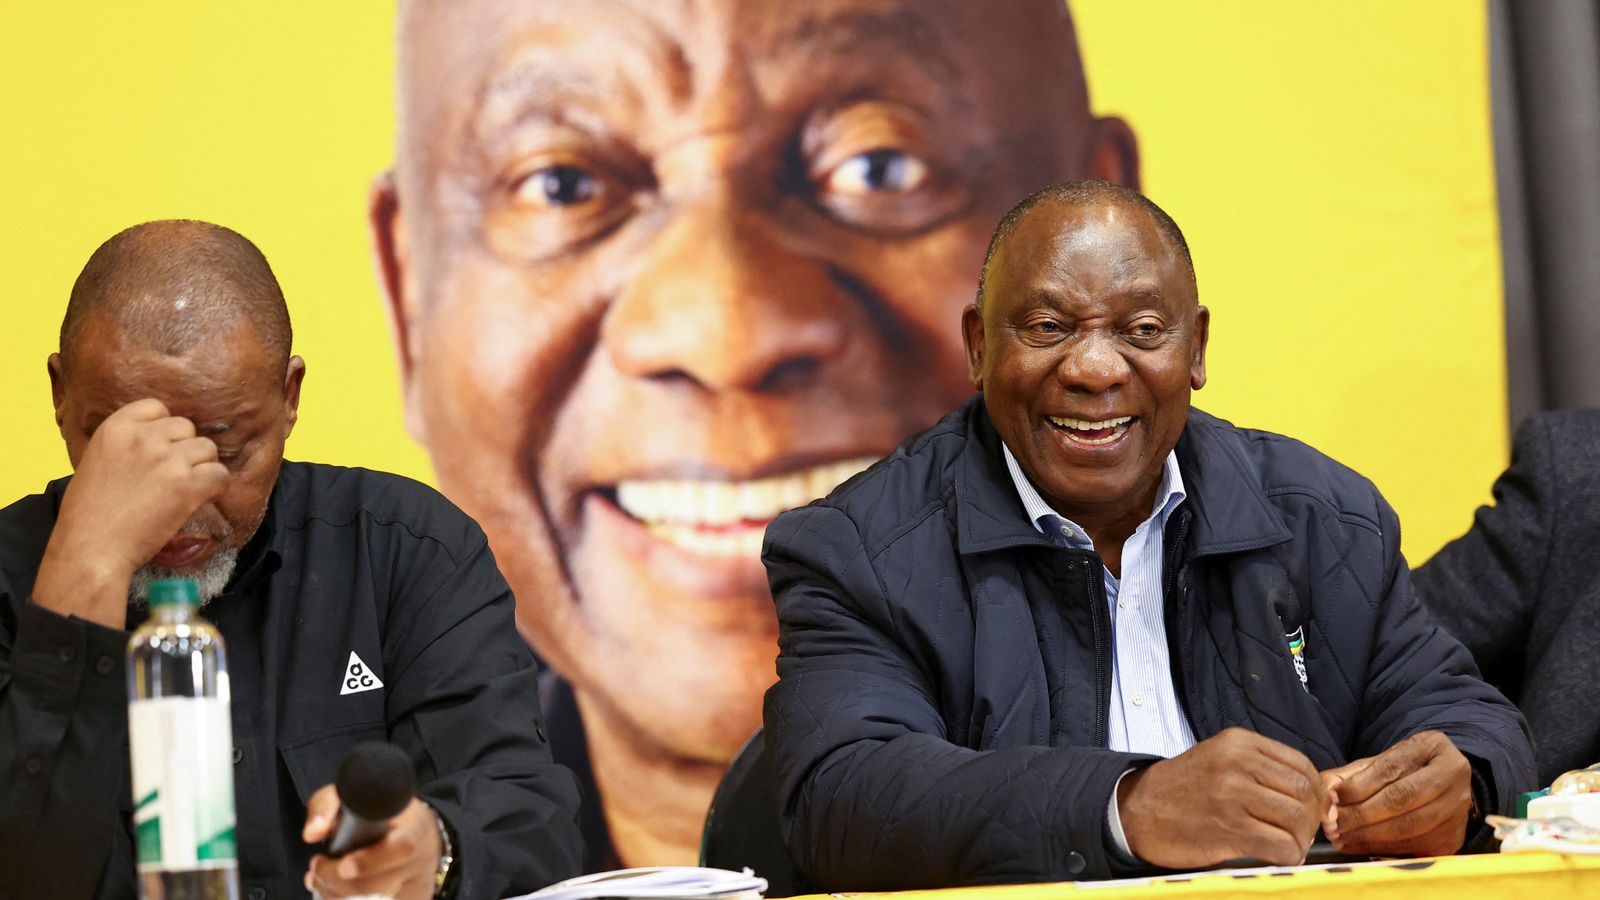 حزب المؤتمر الوطني الأفريقي في جنوب أفريقيا يتواصل مع المعارضة لتشكيل حكومة وحدة |  اخبار العالم